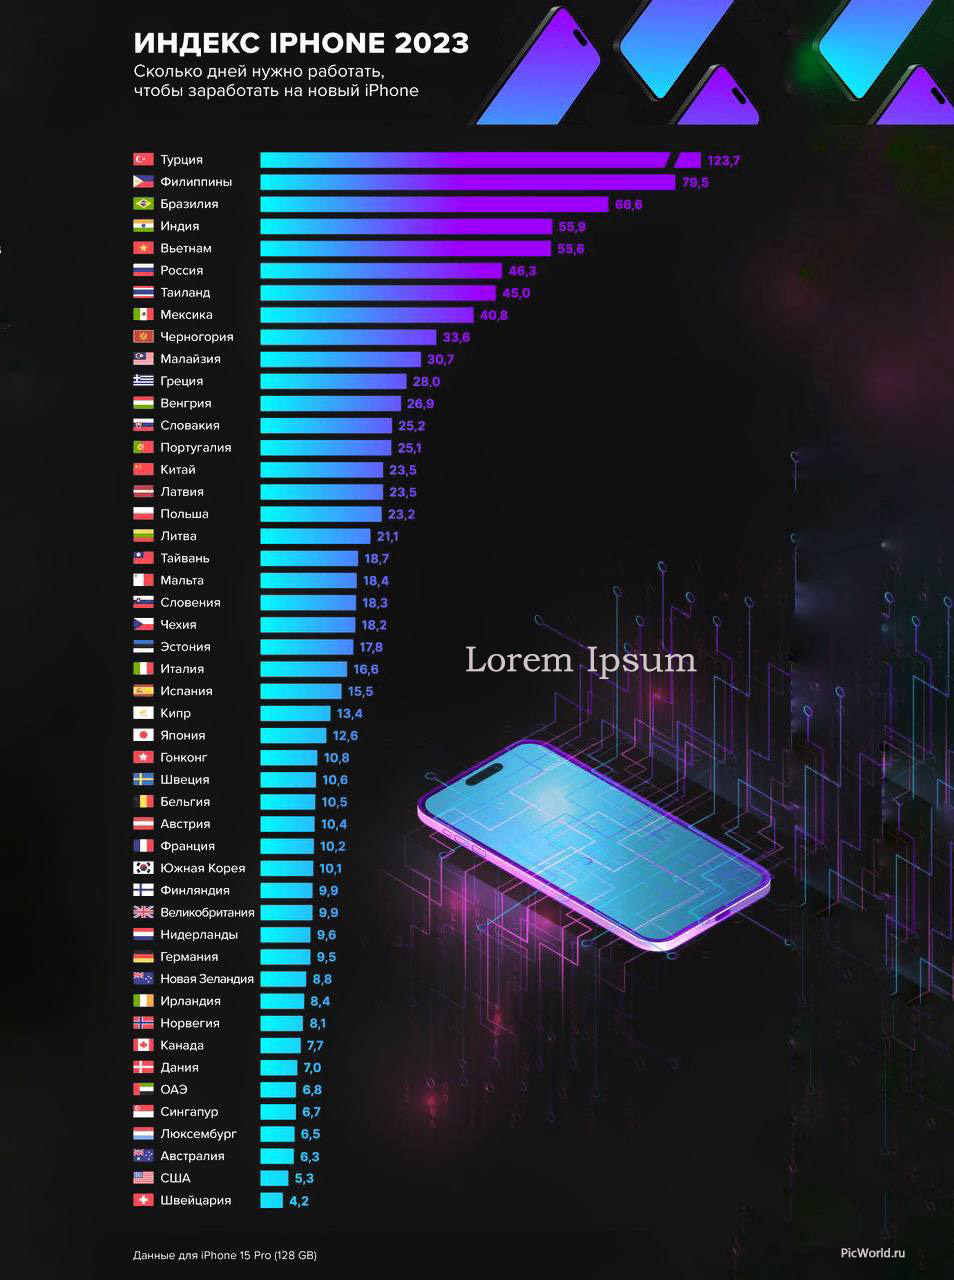 Сколько нужно работать для покупки iPhone 15 Pro 128 Gb в странах мира